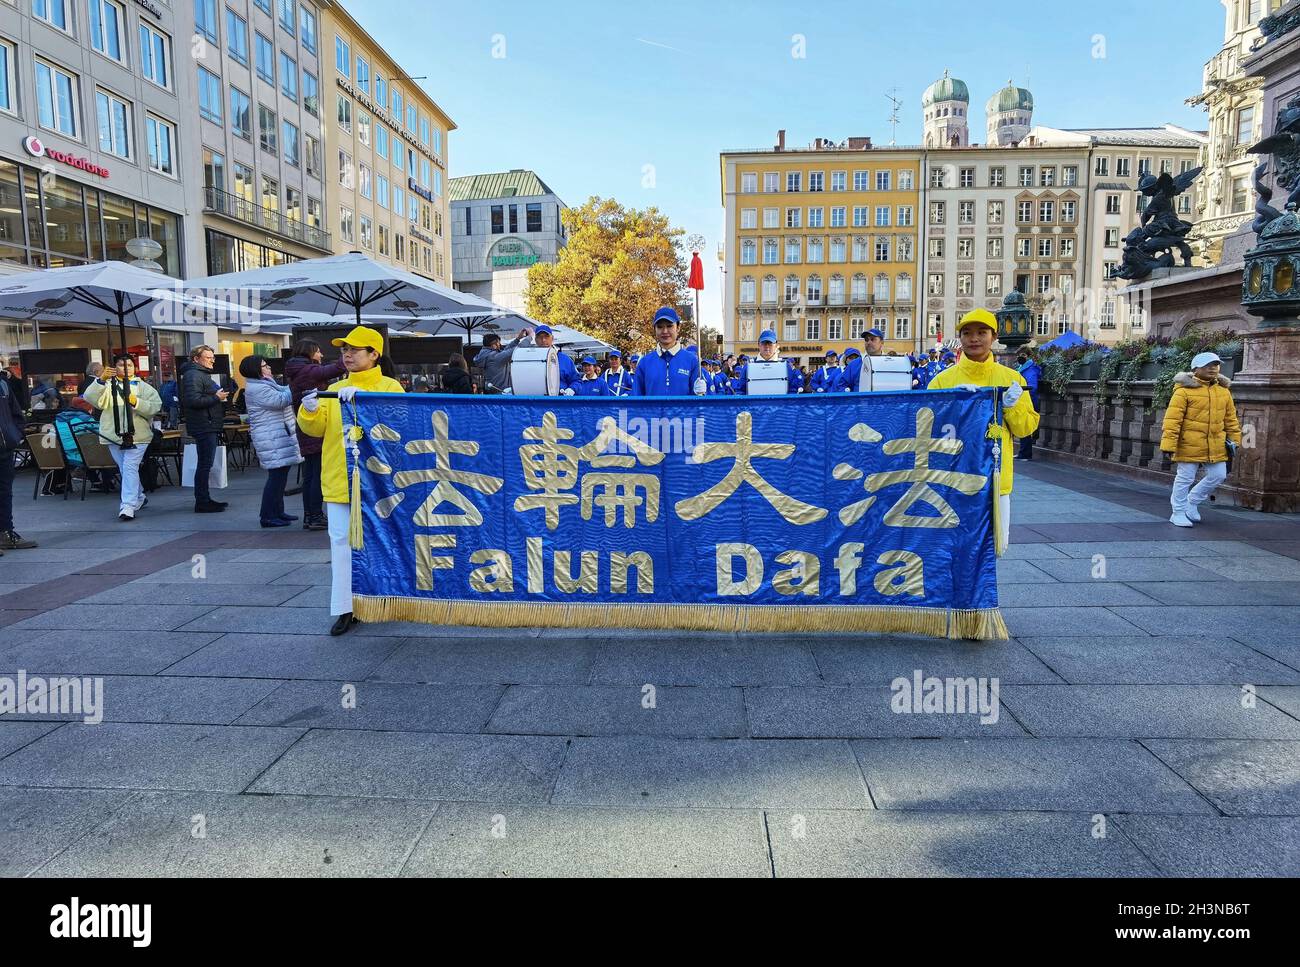 München, Bayern, Deutschland. Okt. 2021. In einer Präsentation der internationalen Politik in Deutschland organisierte die Falun Dafa/Falun Gong 'Meditationsgruppe' in München eine große Demonstration gegen die Kommunistische Partei Chinas. Die Falun Gong- und Dafa-Gruppen werden auf der ganzen Welt, insbesondere in den Vereinigten Staaten, als "Kulte" mit der New Tang Dynasty Mediengruppe als eine Erweiterung von ihnen gesehen, die sich, während sie gegen die KPCh sind, mit antidemokratischen, Verschwörungen, weit- und rechtsextremen Bewegungen im Westen ausrichtet. Kredit: ZUMA Press, Inc./Alamy Live Nachrichten Stockfoto